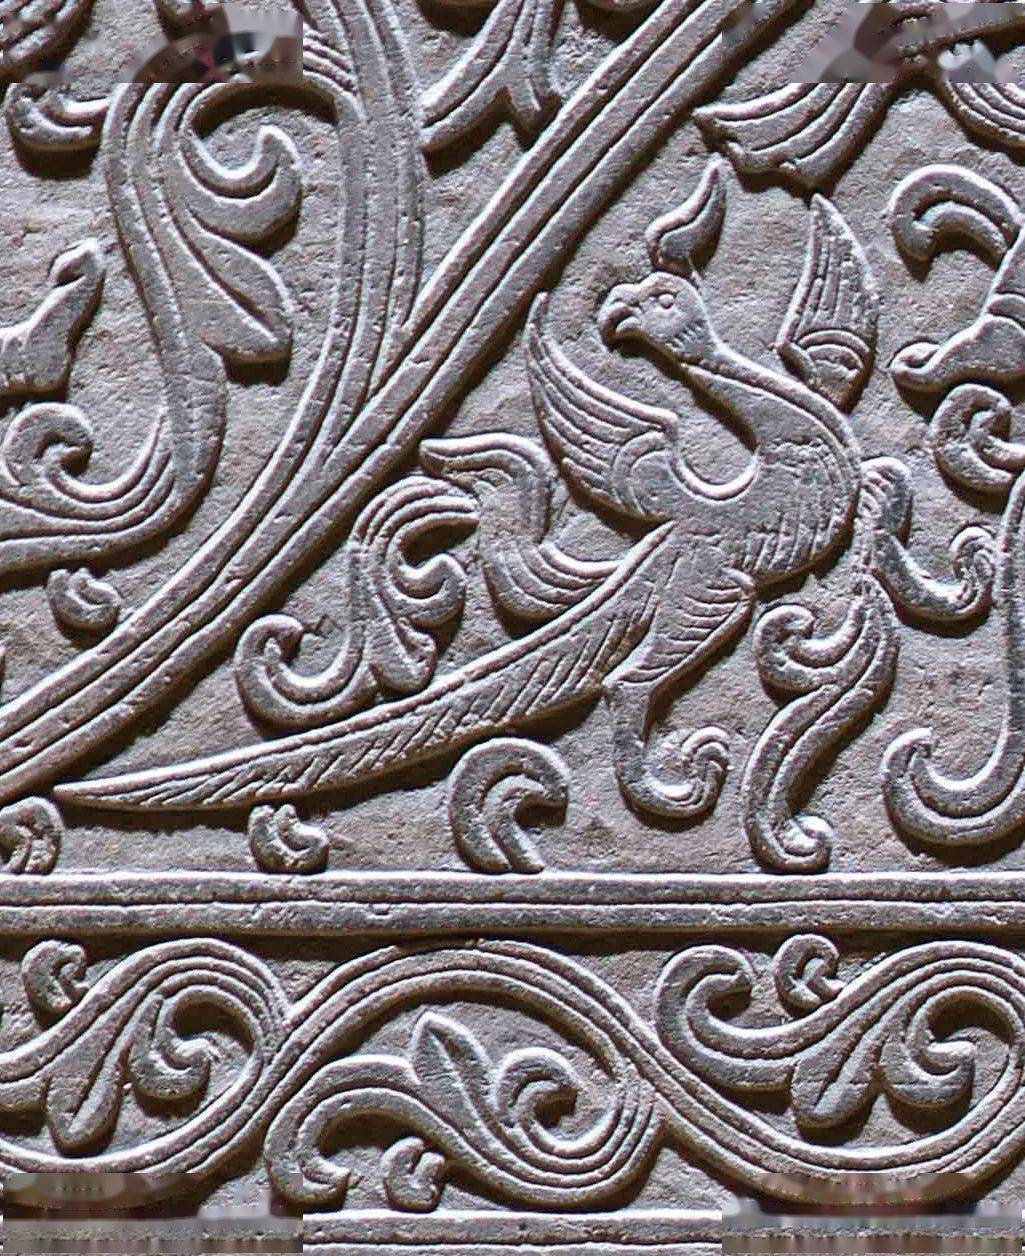 猛虎 05 精彩绝伦的石雕纹饰 忍冬纹 忍冬纹是魏晋南北朝时期流行的